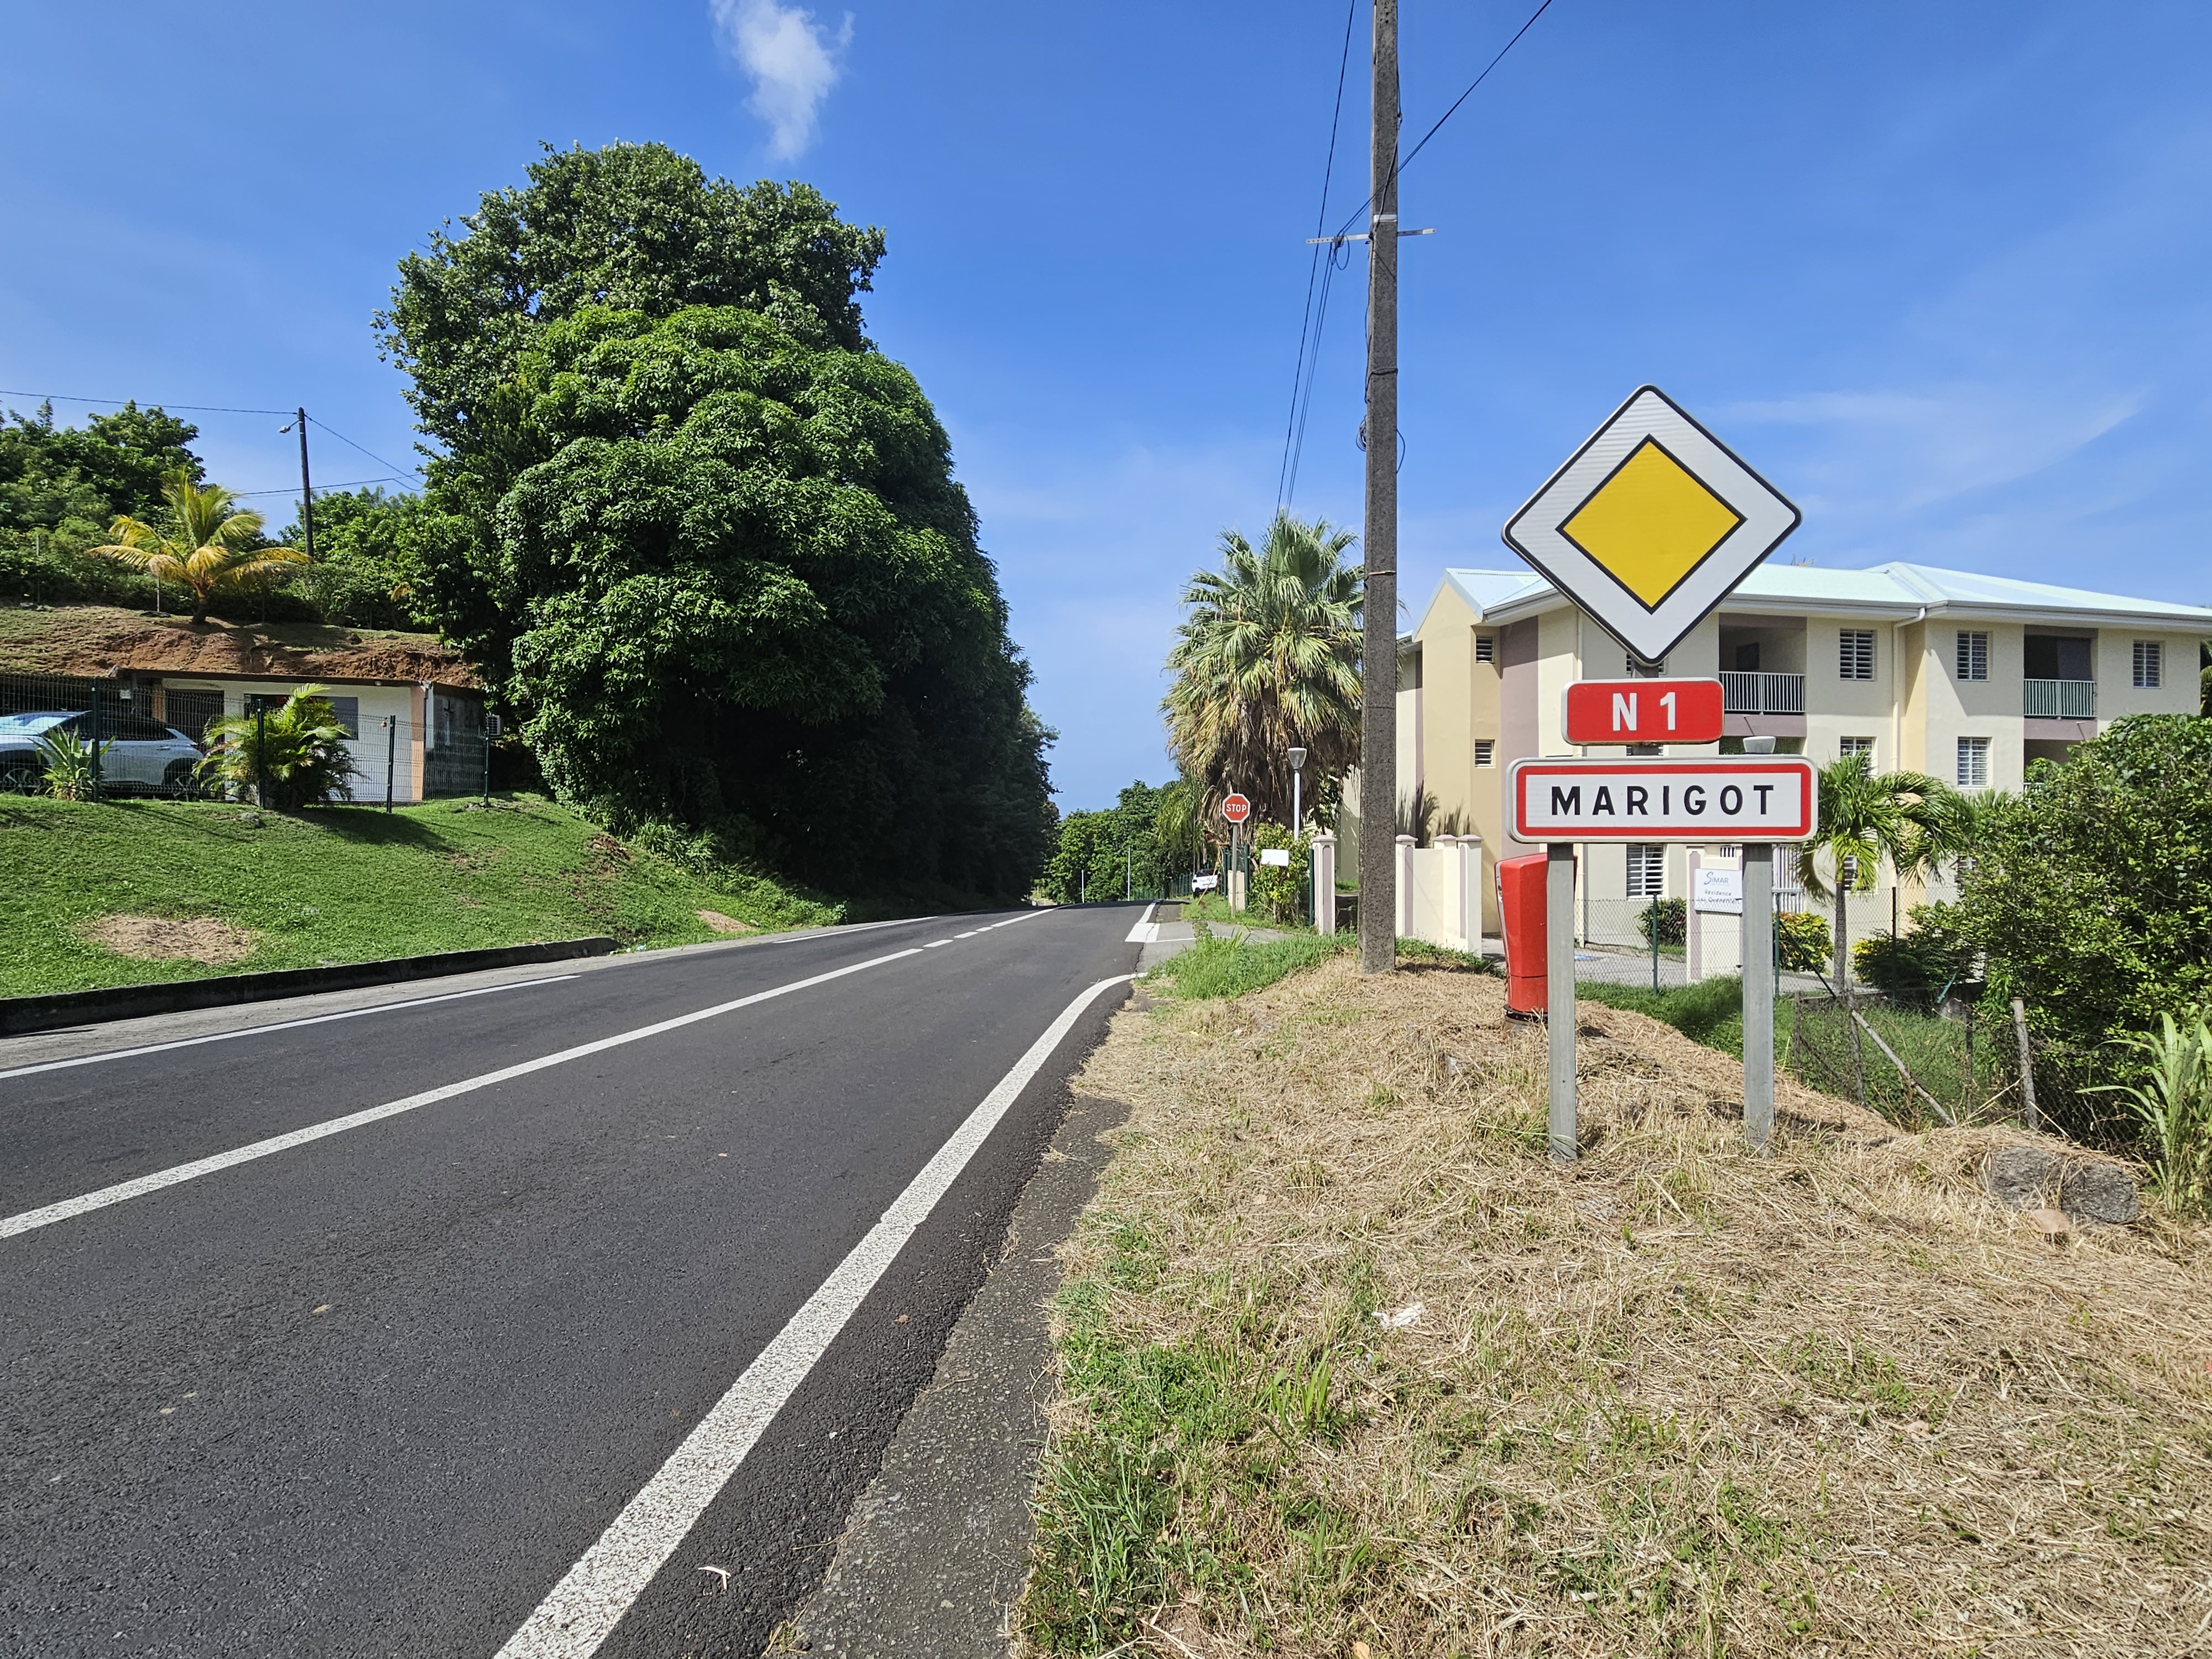     5 communes labellisées « Villages d’avenir » en Martinique

